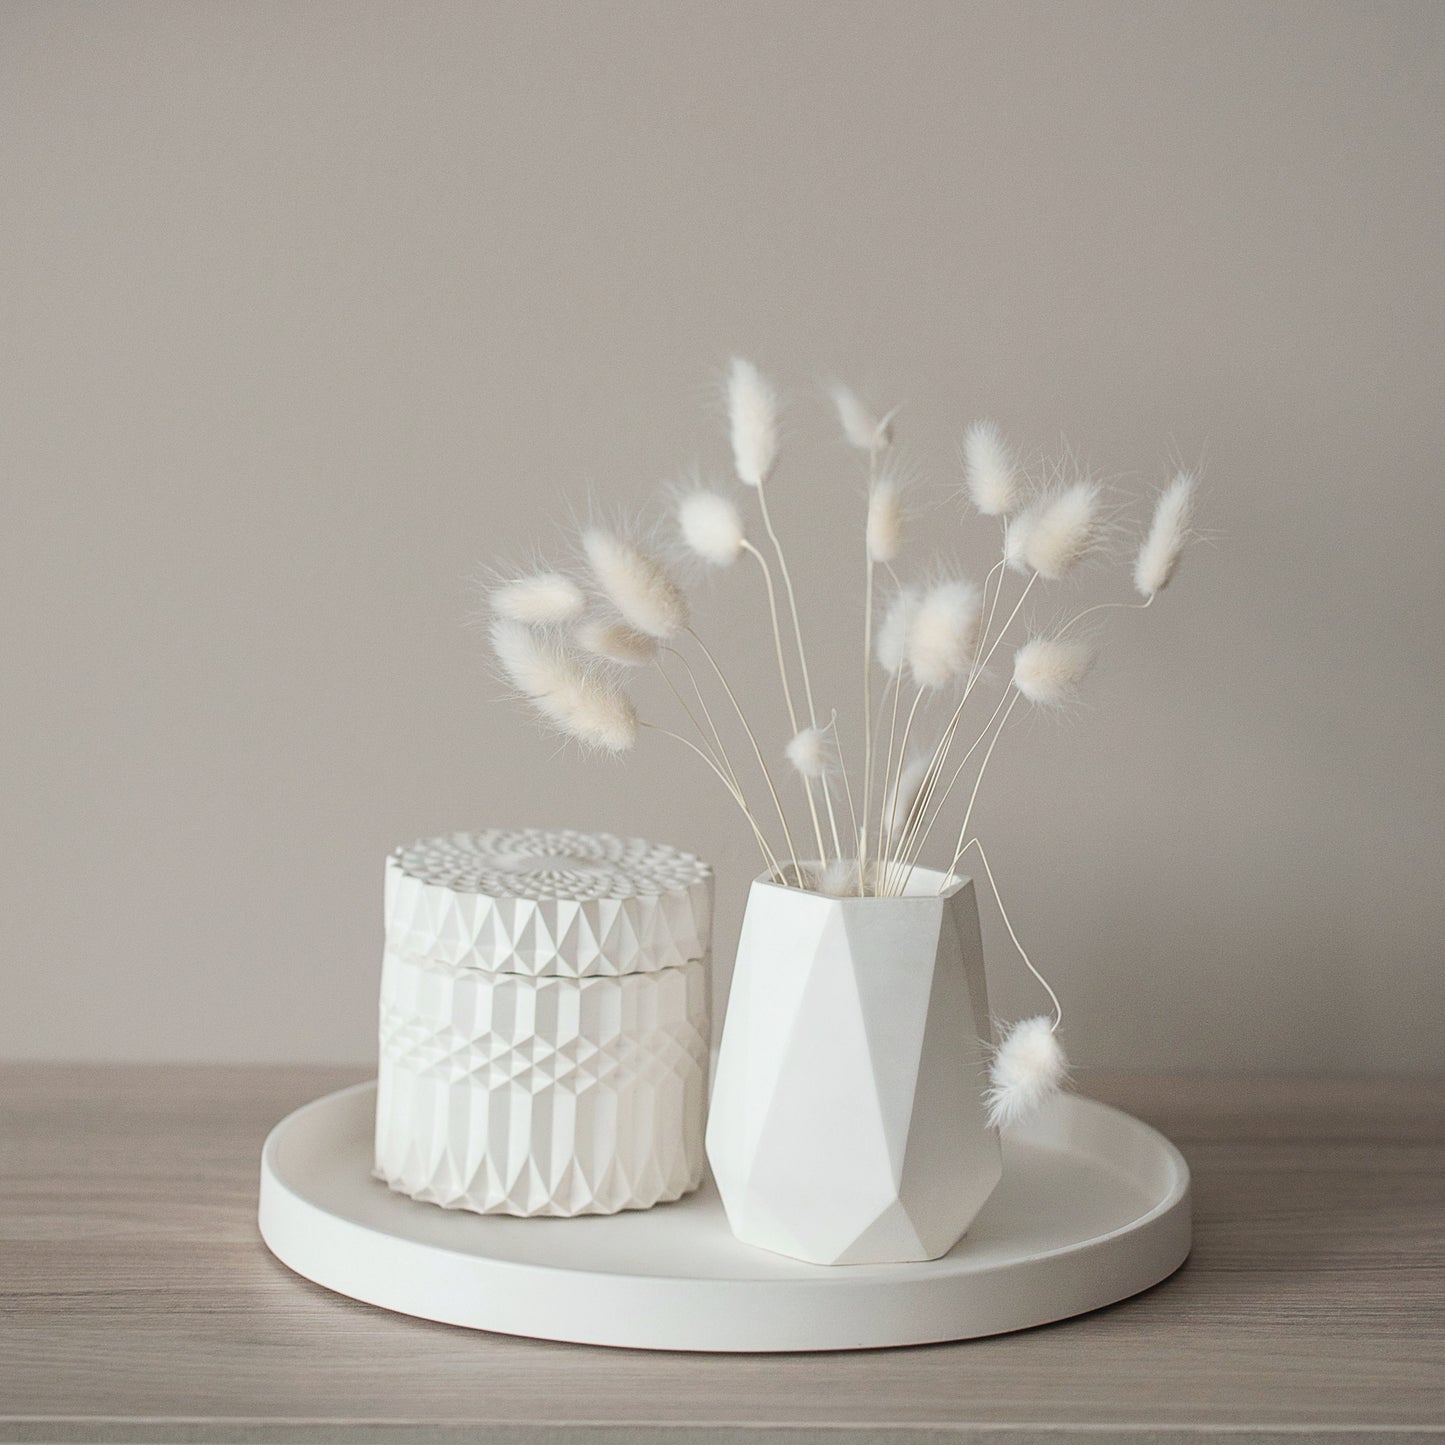 Diamond Shape Vase for Dry Flowers - Flower Pot Home Decor, Housewarming Gift